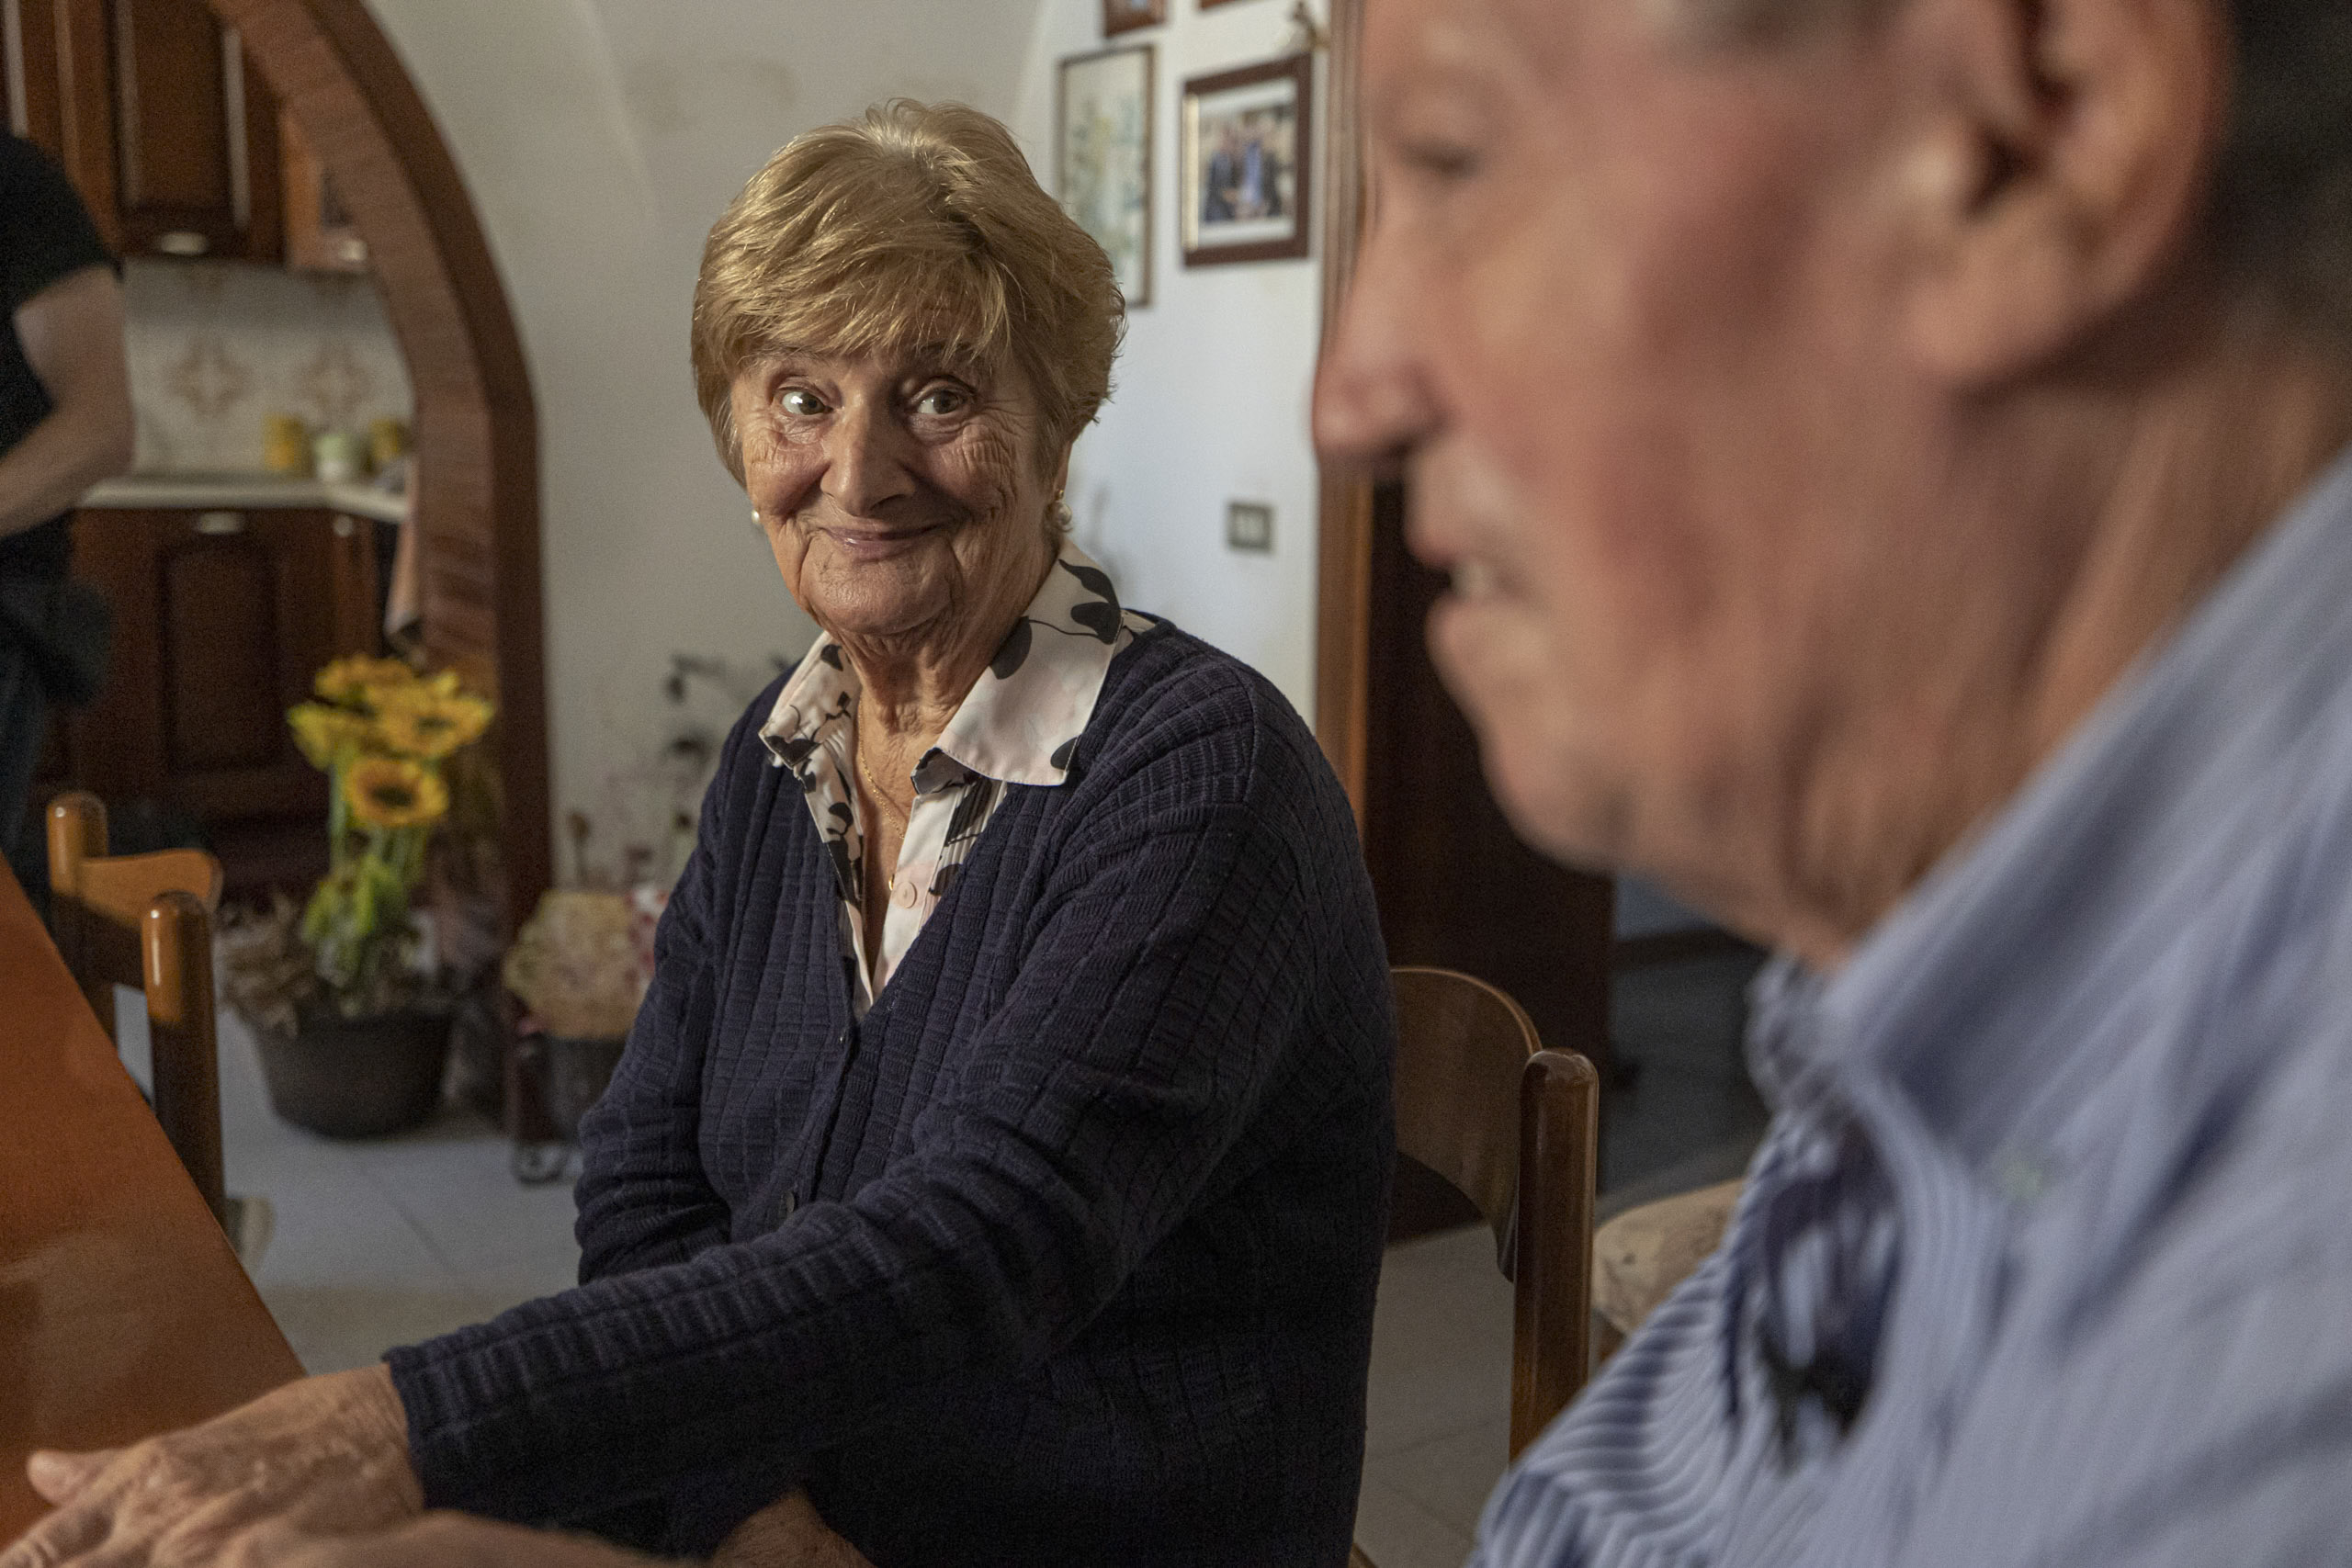 Eine ältere Frau mit kurzem, hellbraunem Haar und einem verschmitzten Lächeln sitzt an einem Esstisch und blickt in die Kamera. Ein älterer Mann, der teilweise im Vordergrund zu sehen ist, blickt von der Kamera weg. © Fotografie Tomas Rodriguez